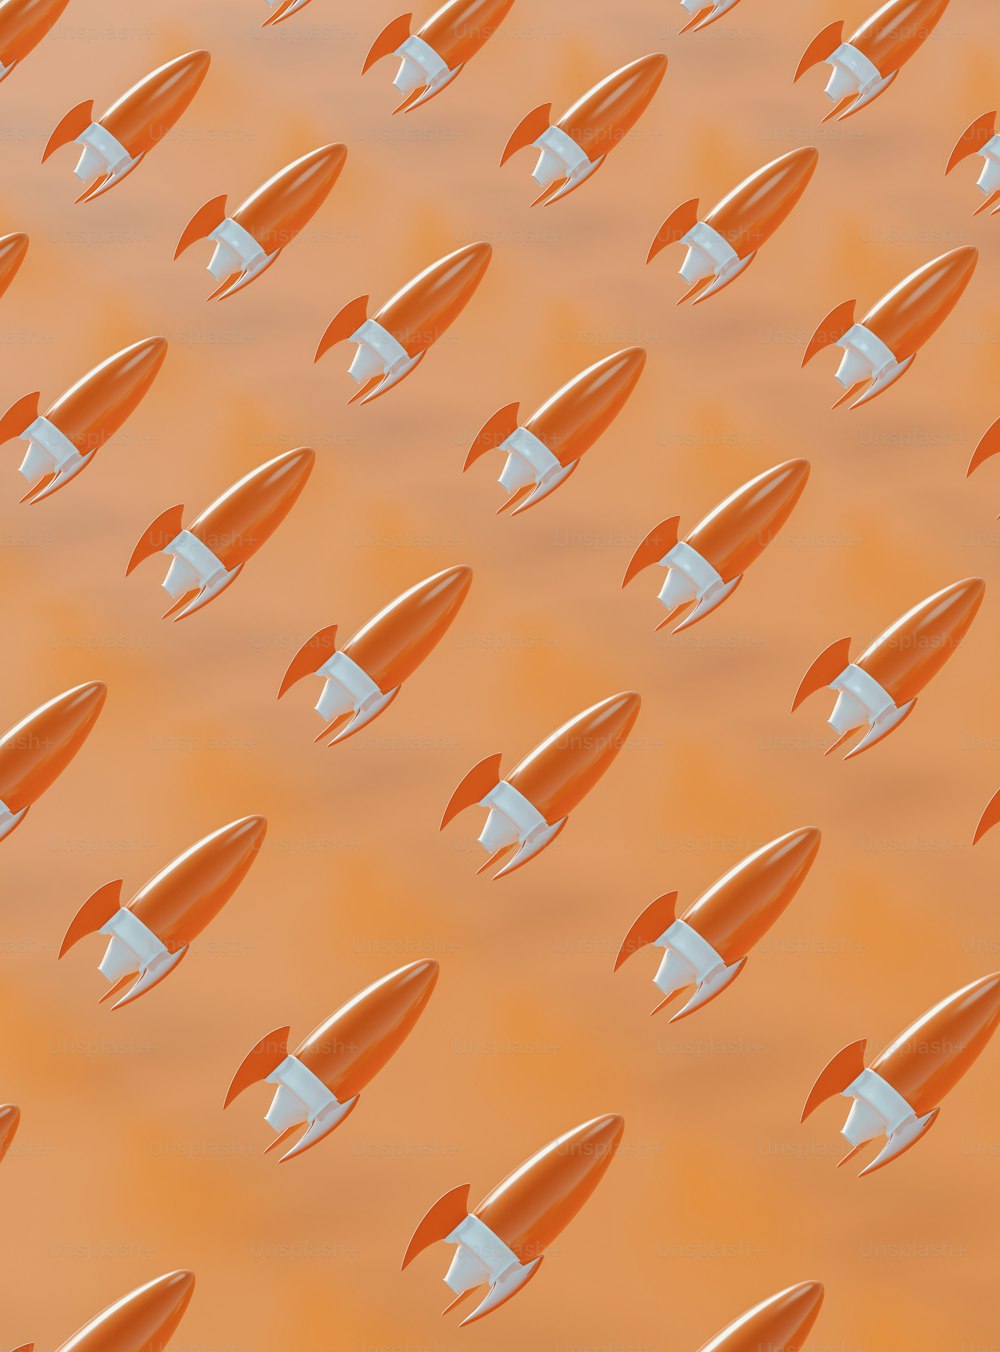 Un grupo de cohetes naranjas y blancos volando por el aire